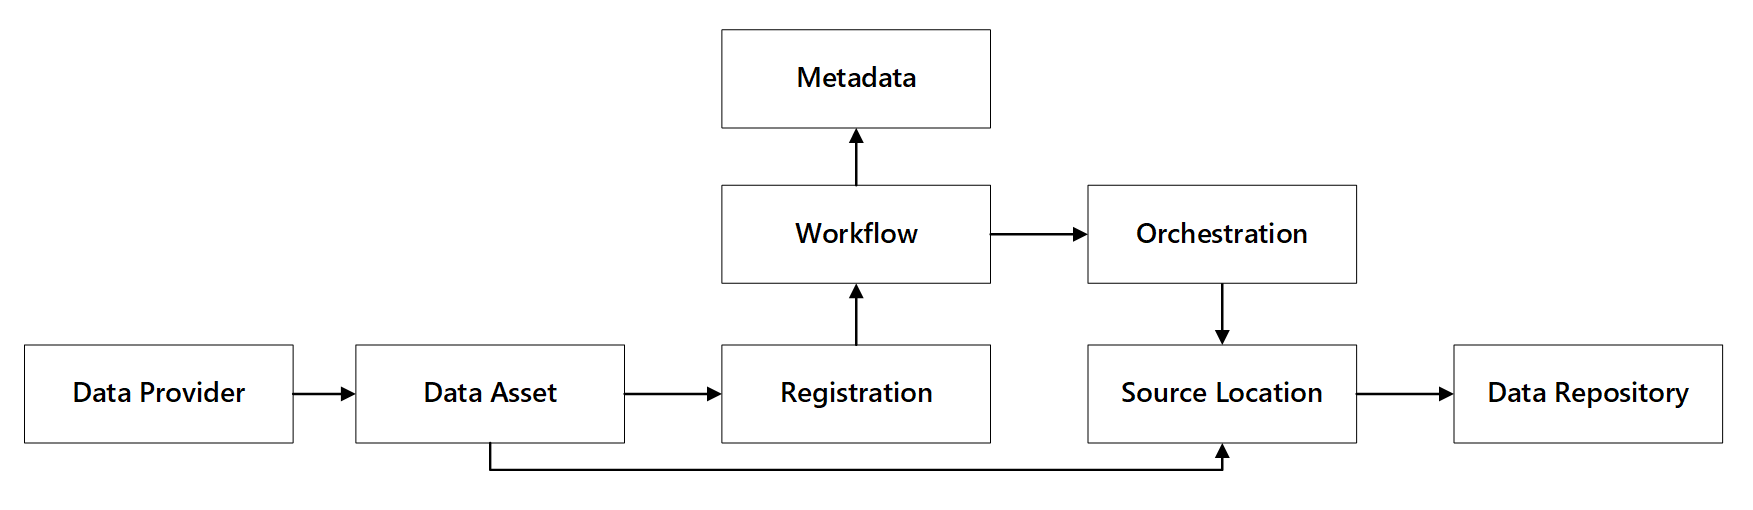 データ登録機能と相互作用の図